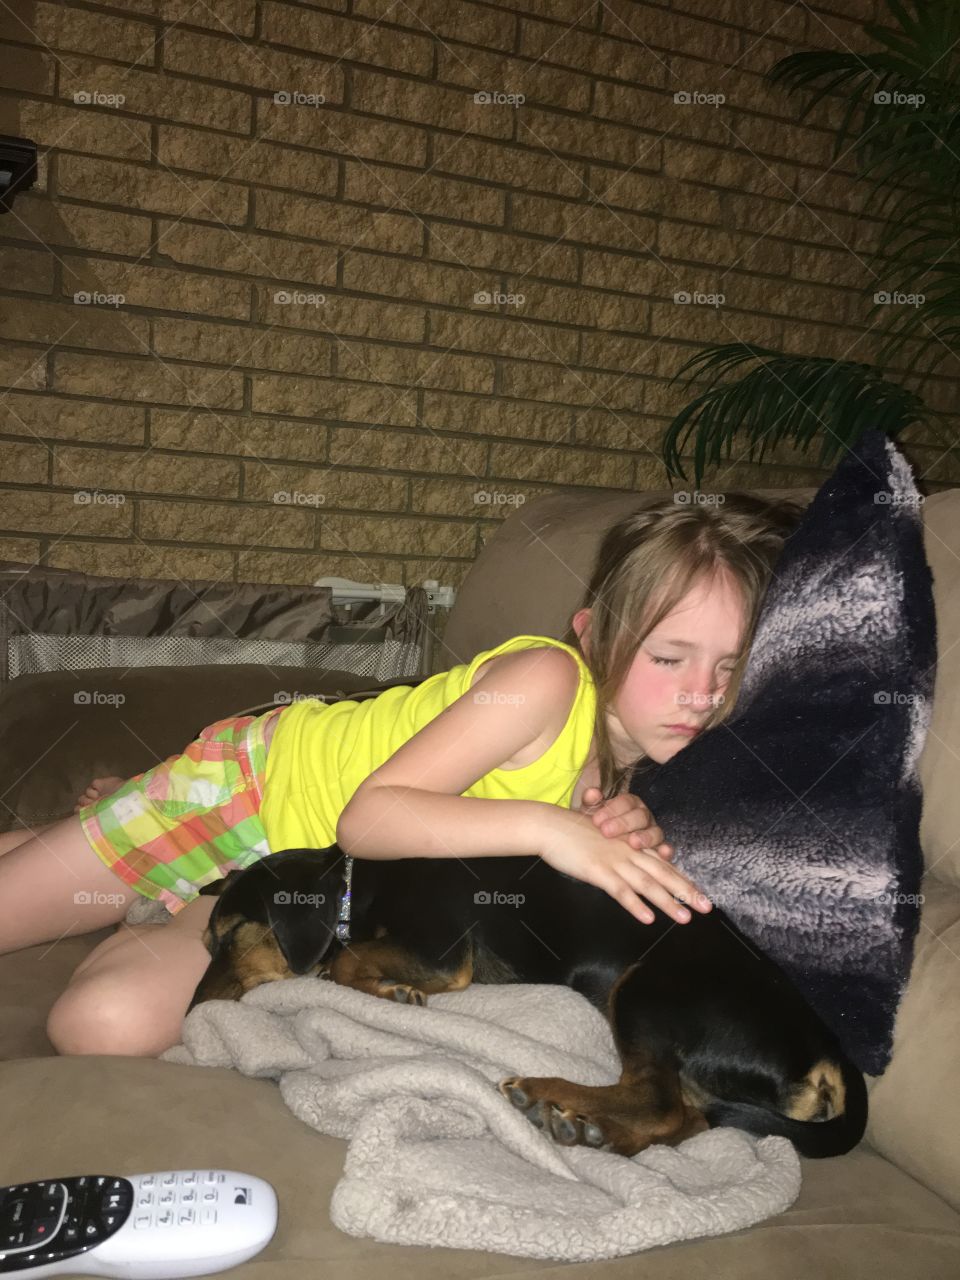 Girl sleeping with her dog